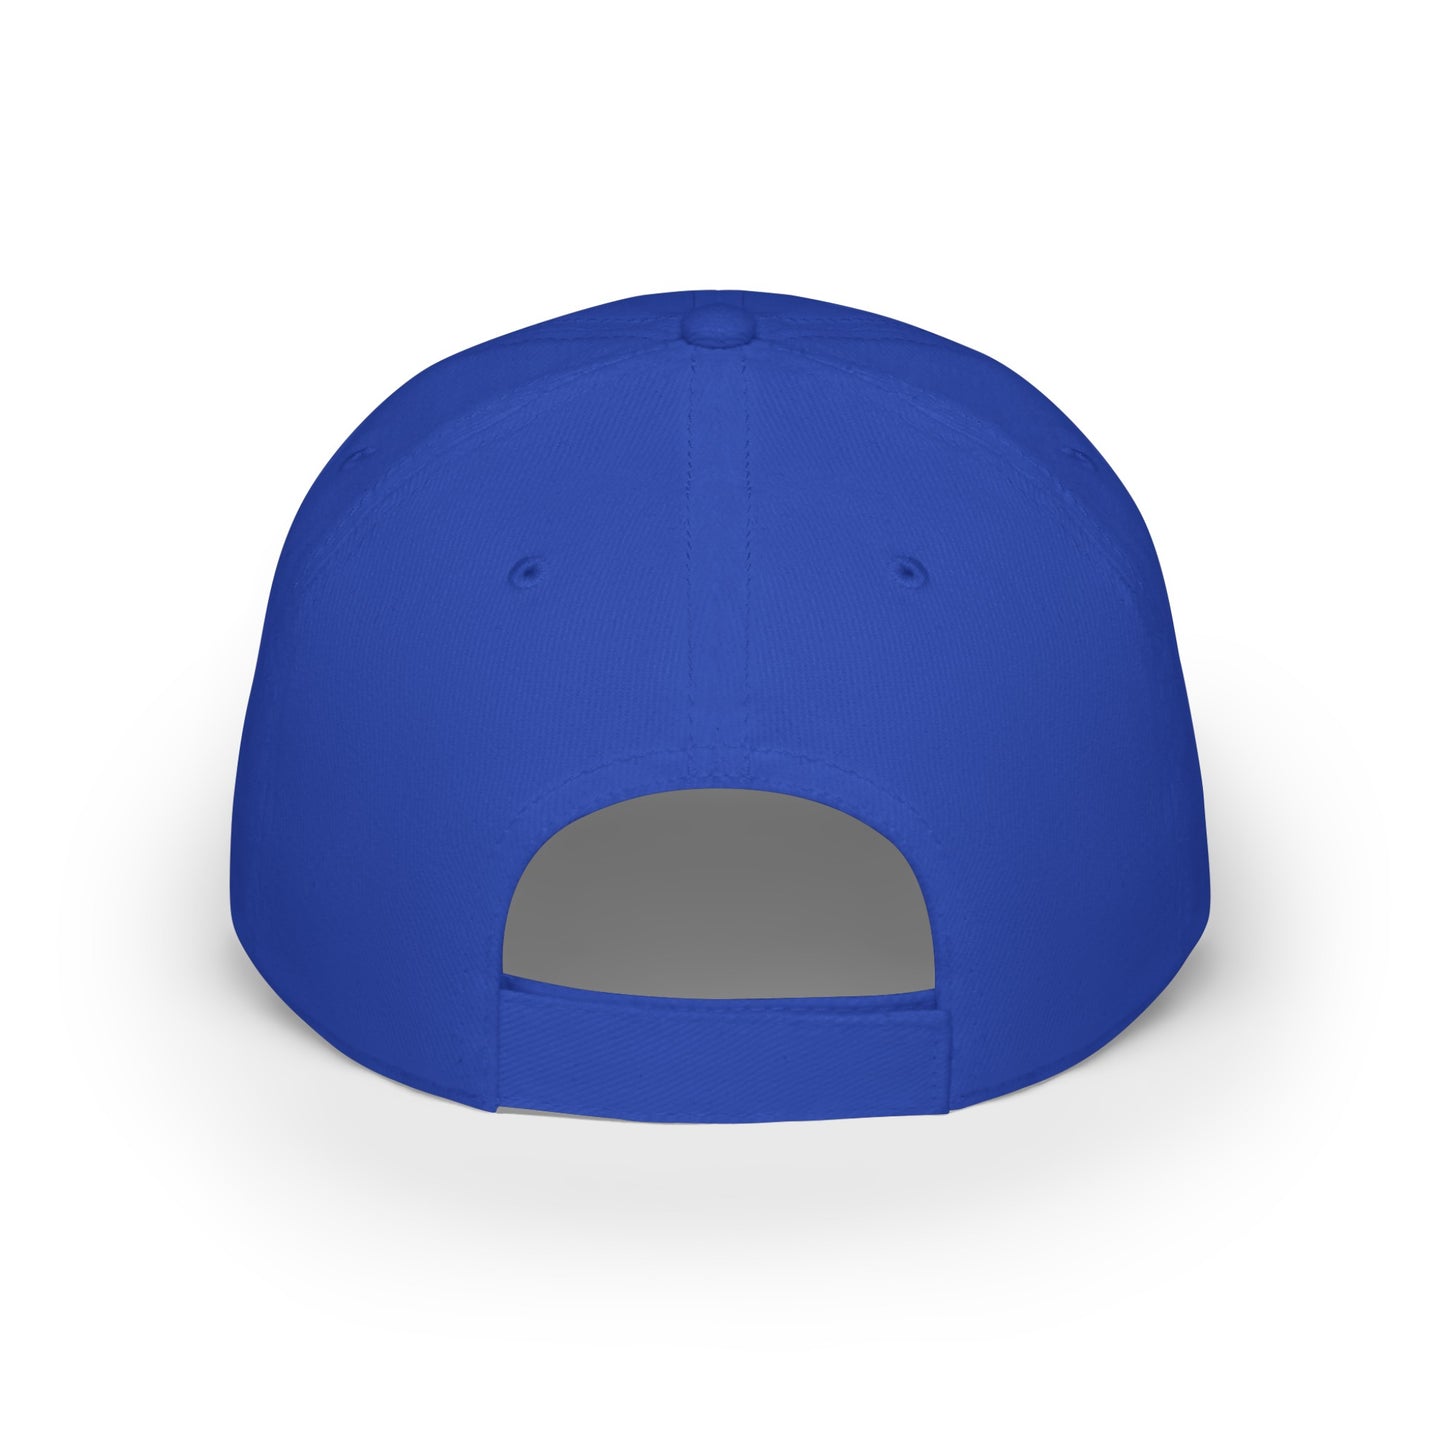 MDBTDJ#SBBLUC - Low Profile Baseball Cap Tattooed Dj's Limited Edition, Hats, Tattooed Djs Shop